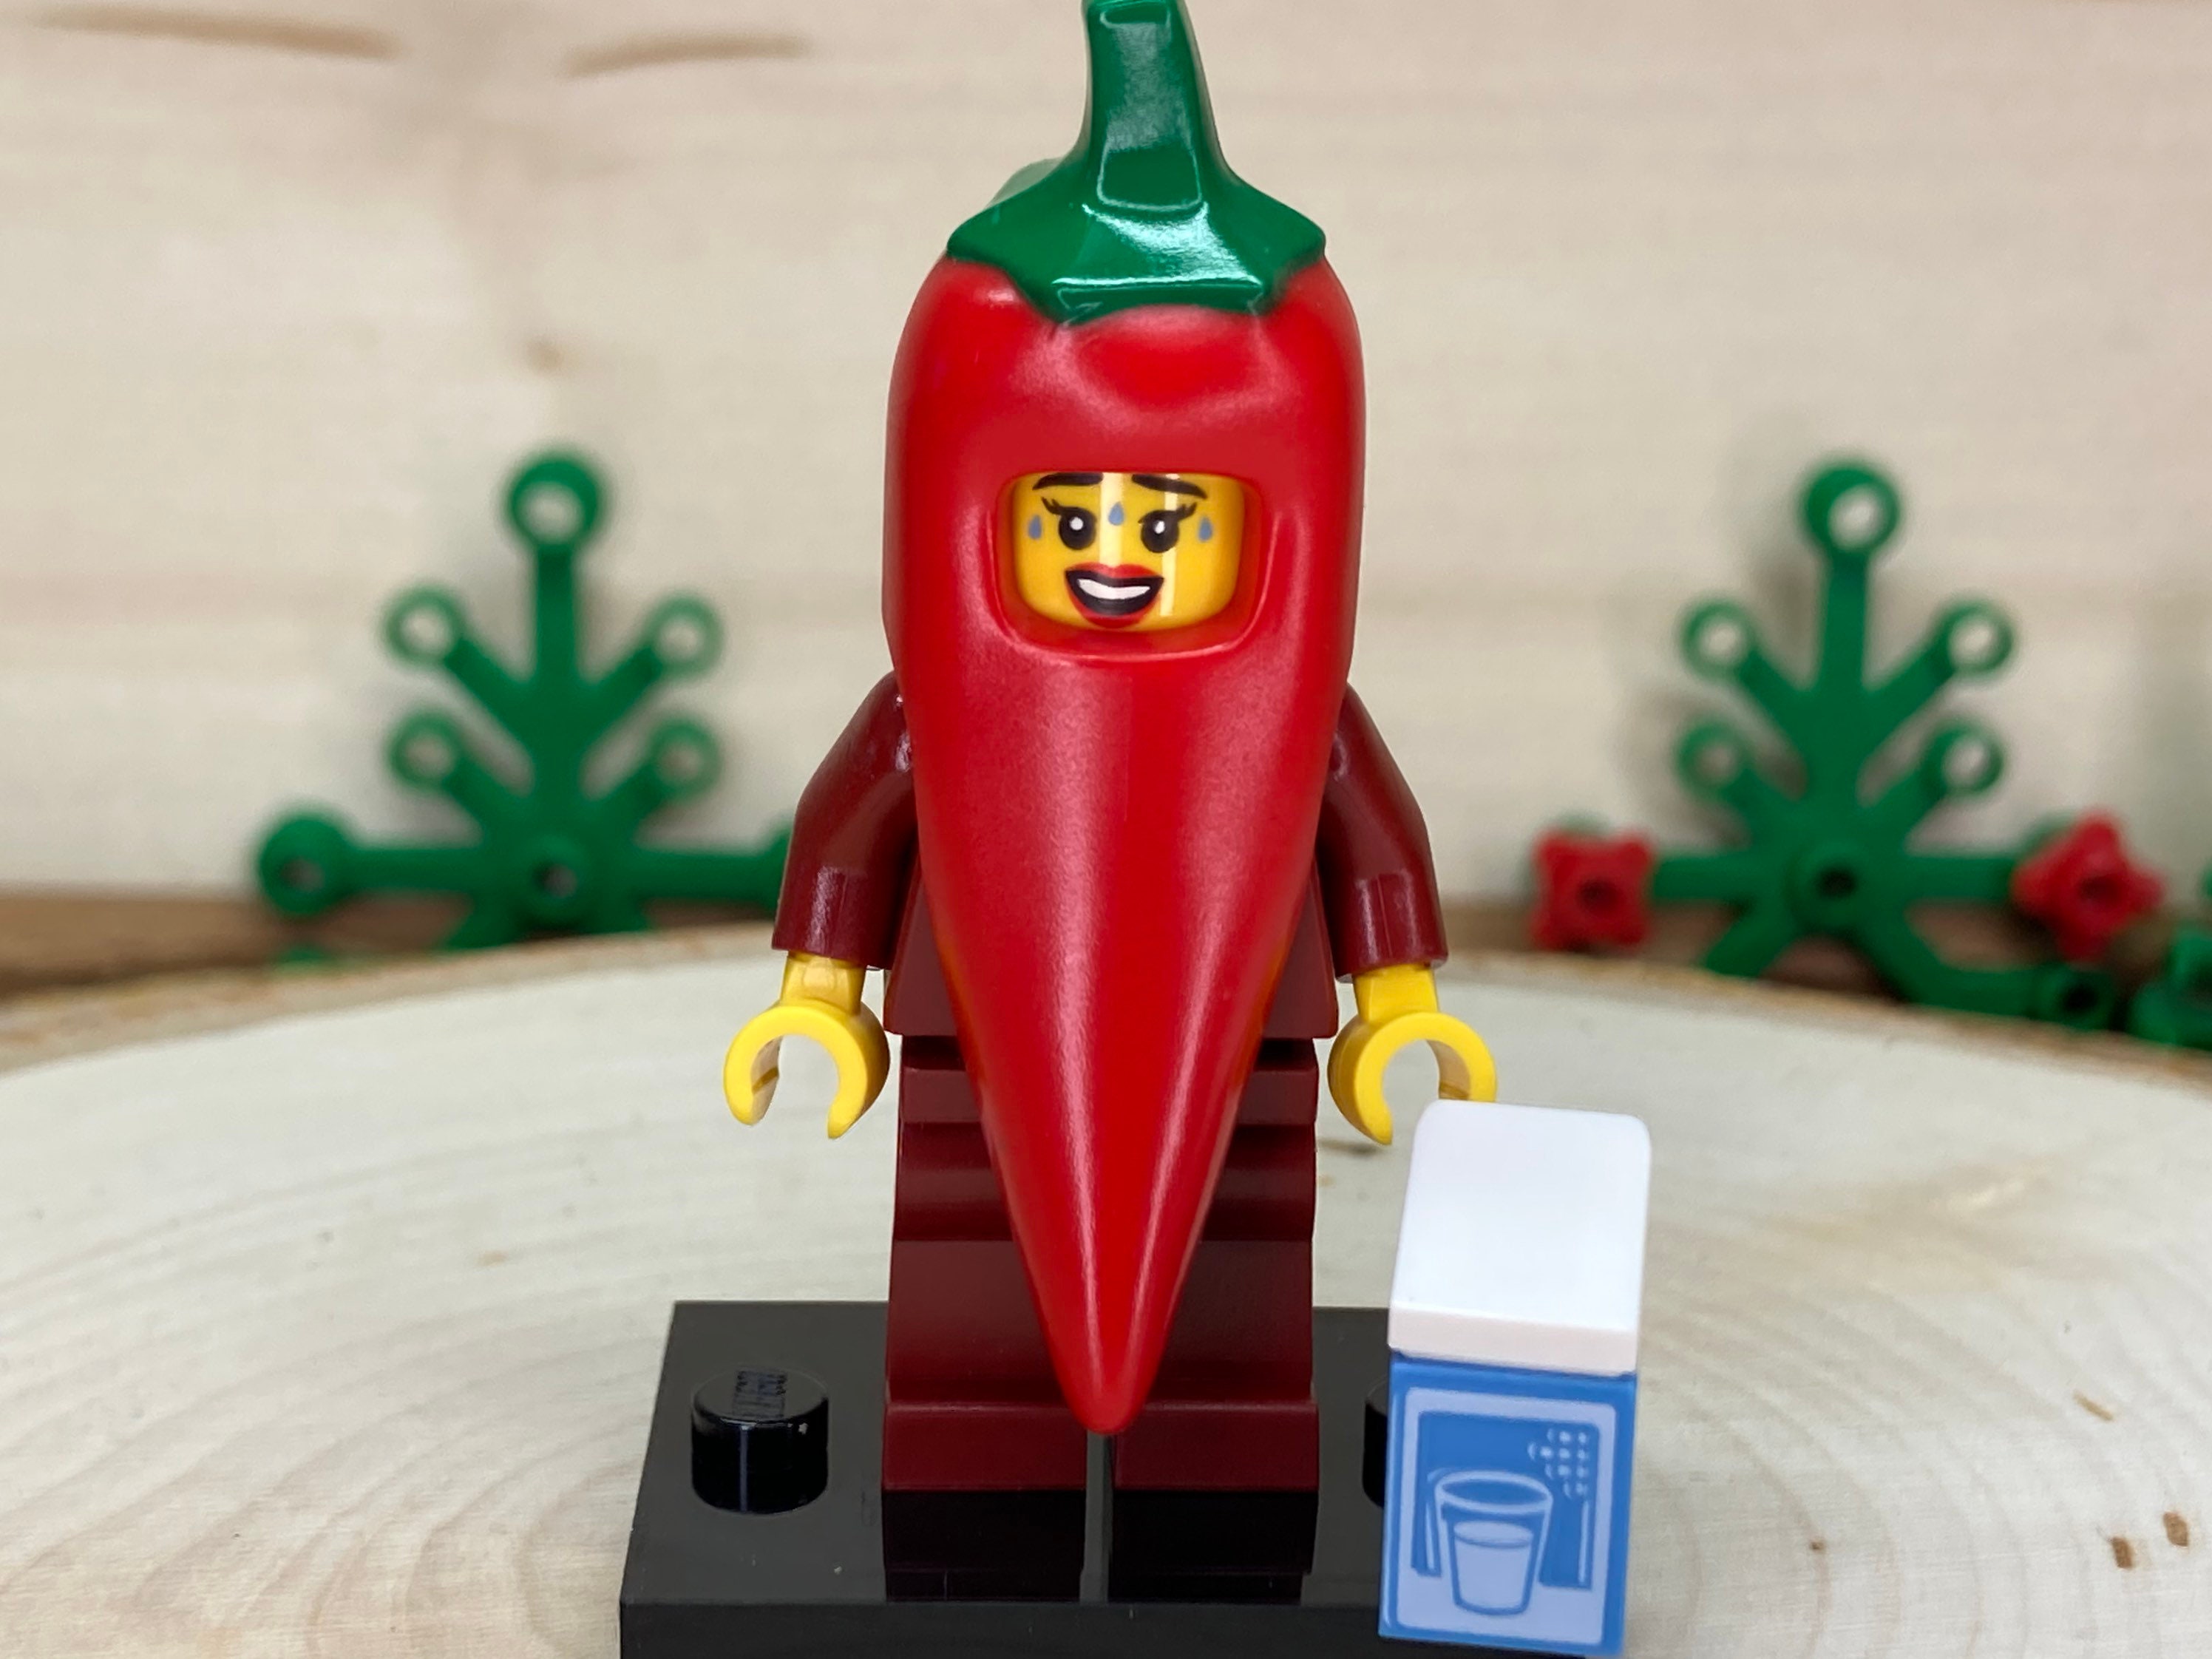 Déguisement brique Lego® rouge adulte Le Deguisement.com